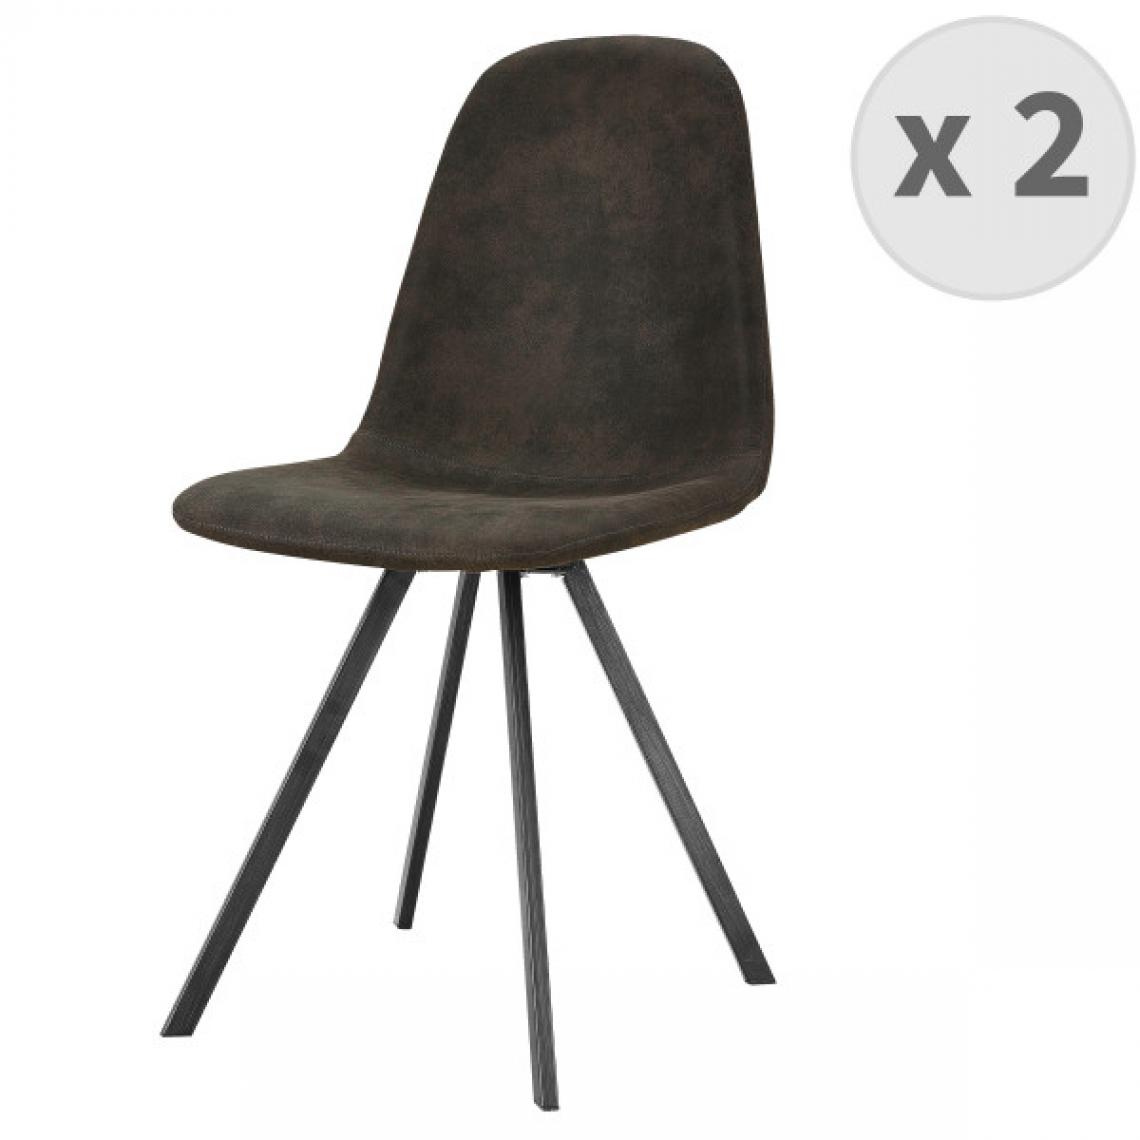 Moloo - ATLANTA-Chaise industrielle microfibre èbène vintage pieds noir (x2) - Chaises